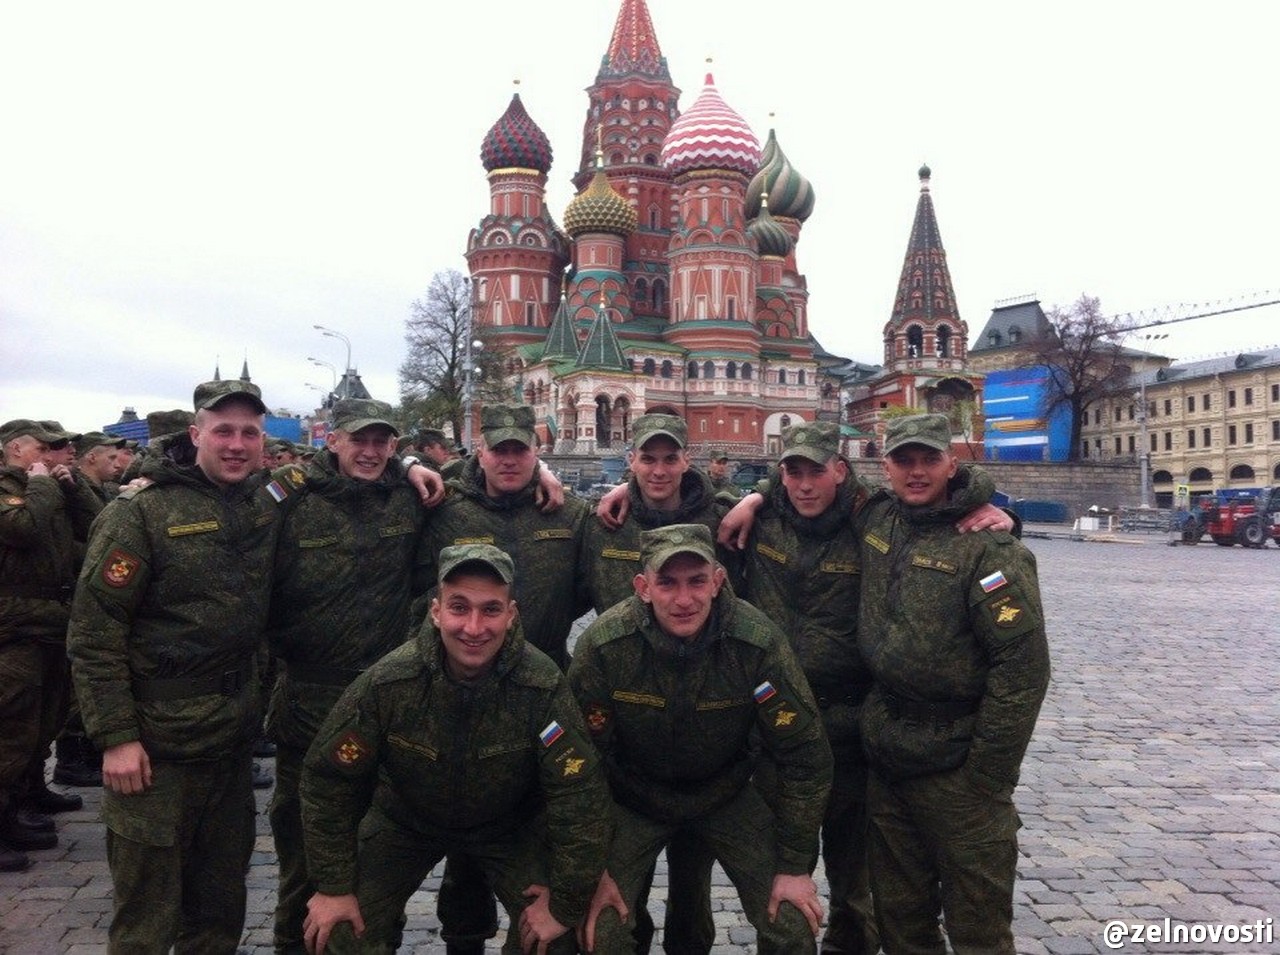 5 мая 2015. Украинские войска на красной площади. Армия России на красной площади. Солдаты на красной площади. Парад Победы 2008 года на красной площади.